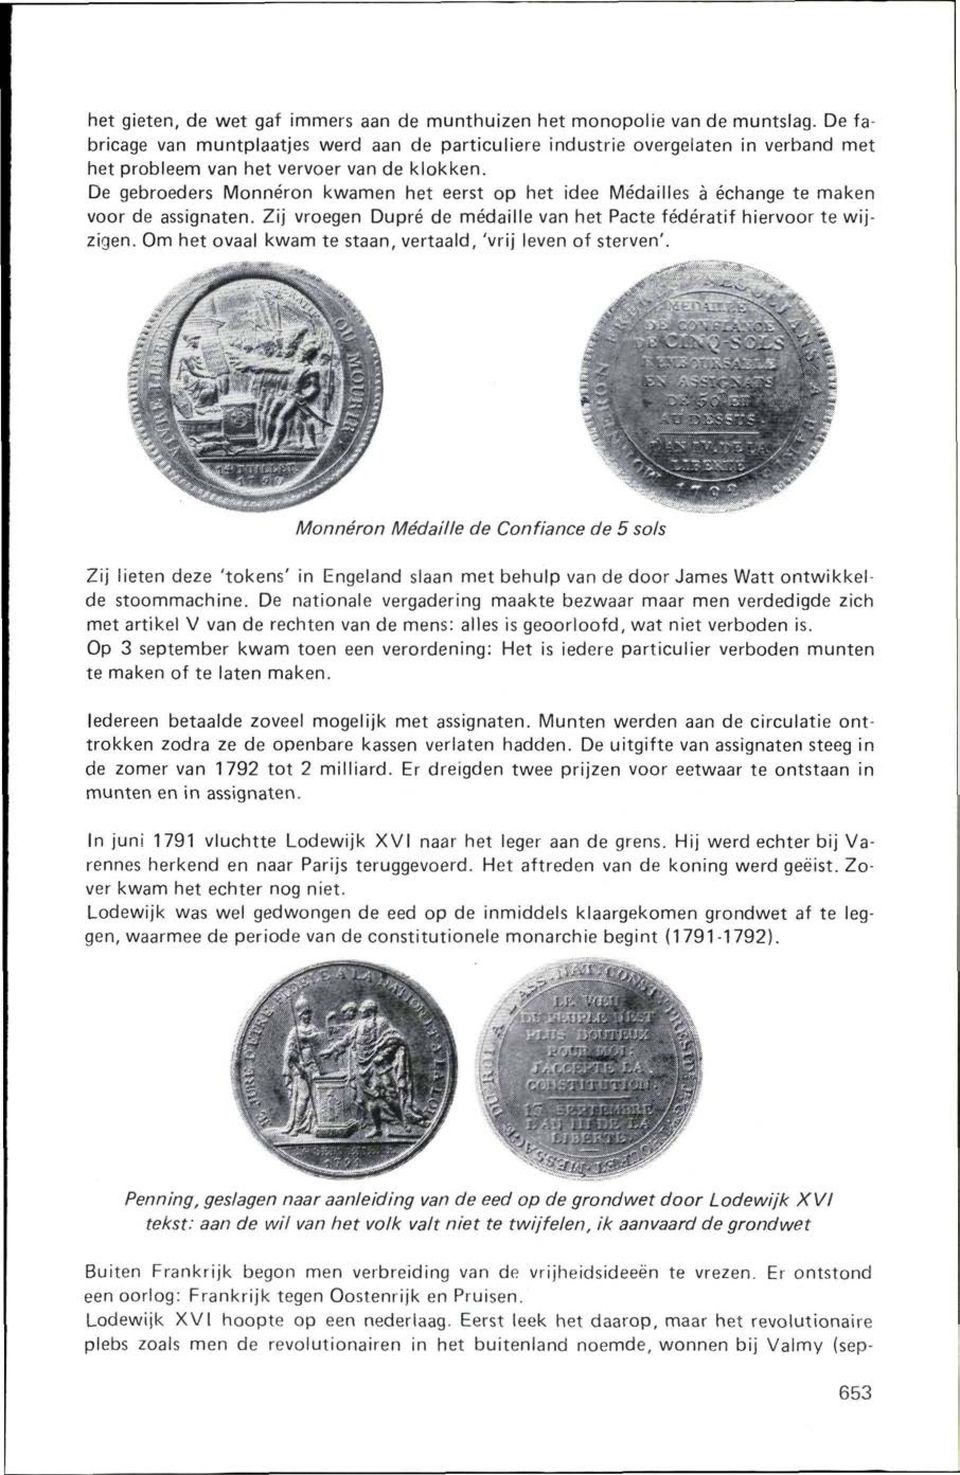 De gebroeders Monnéron kwamen het eerst op het idee Médailles a échange te maken voor de assignaten. Zij vroegen Dupré de médaille van het Pacte fédératif hiervoor te wijzigen.